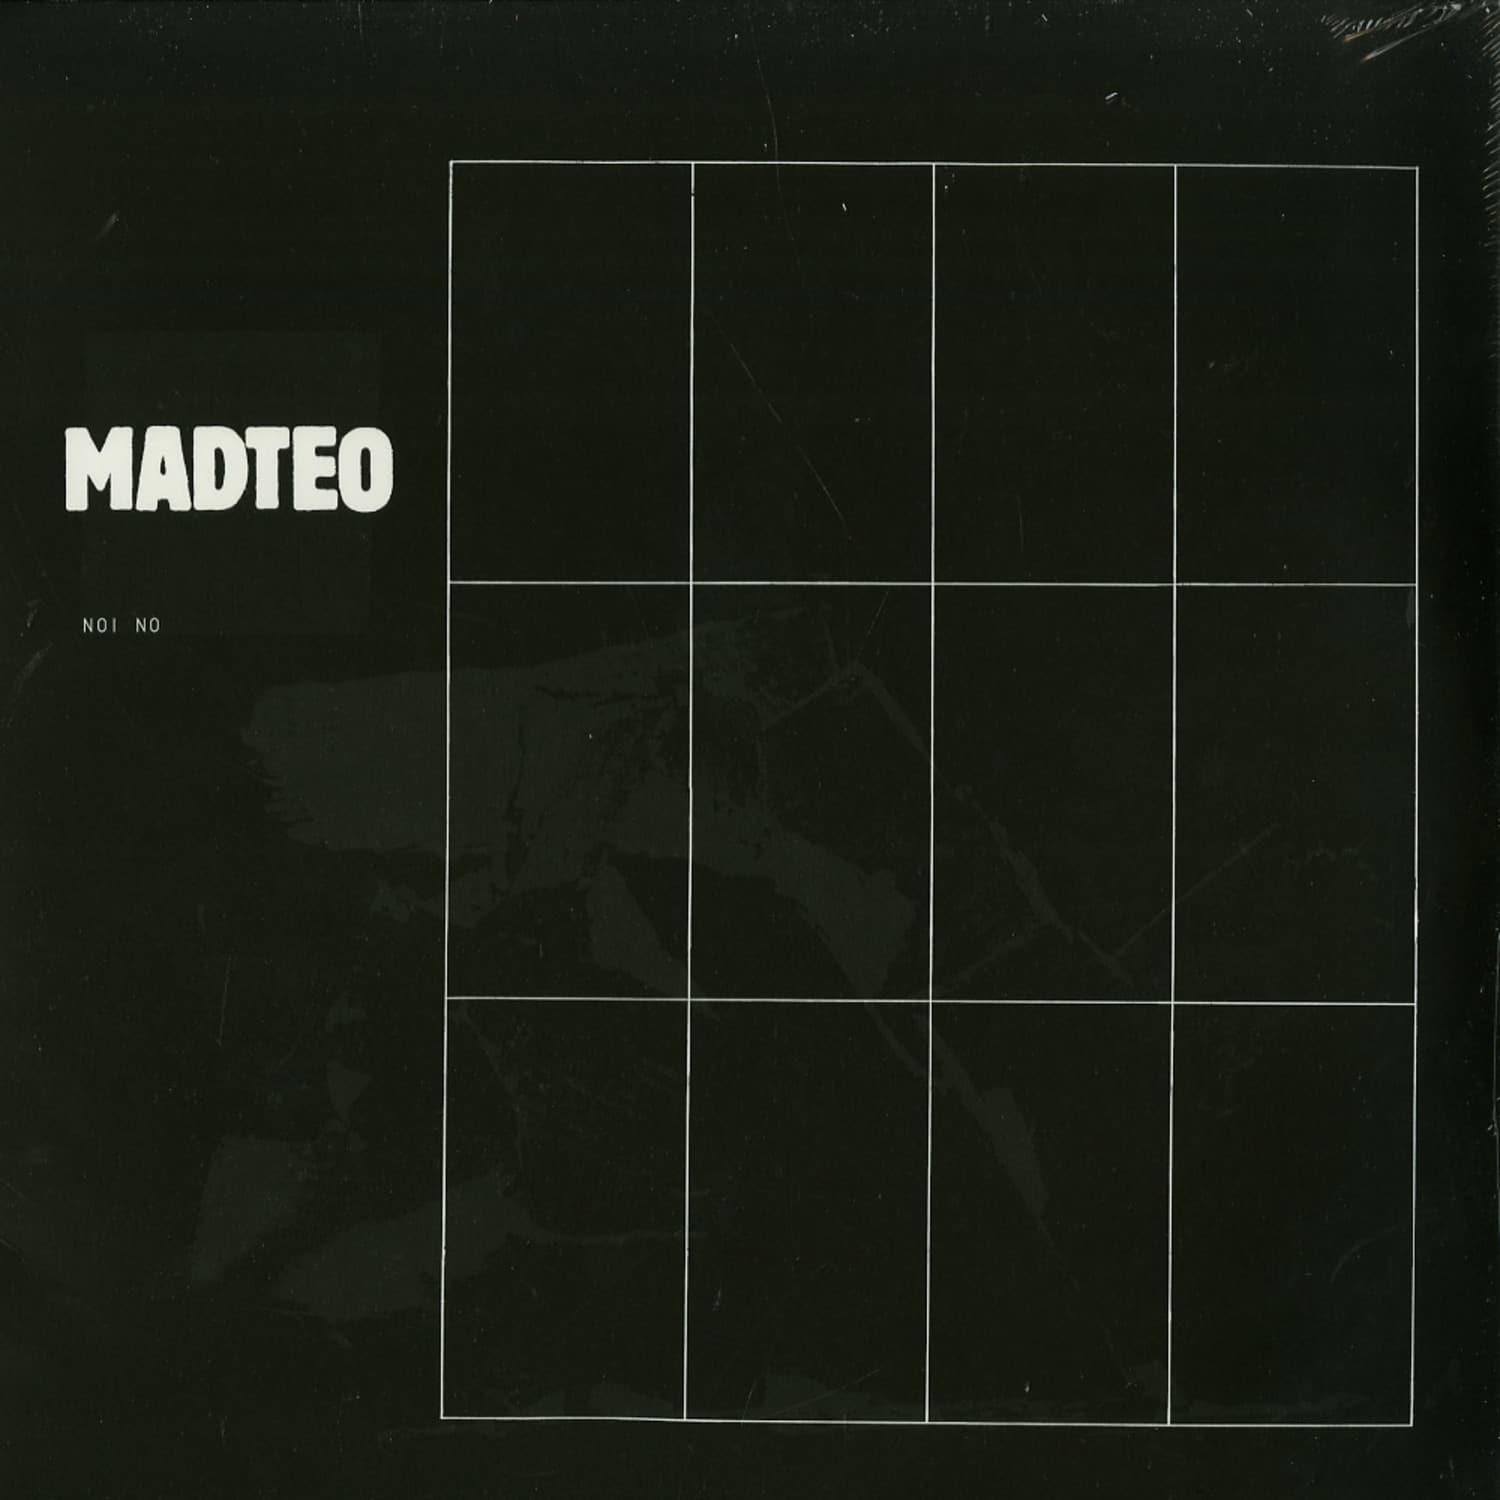 Madteo - NOI NO 